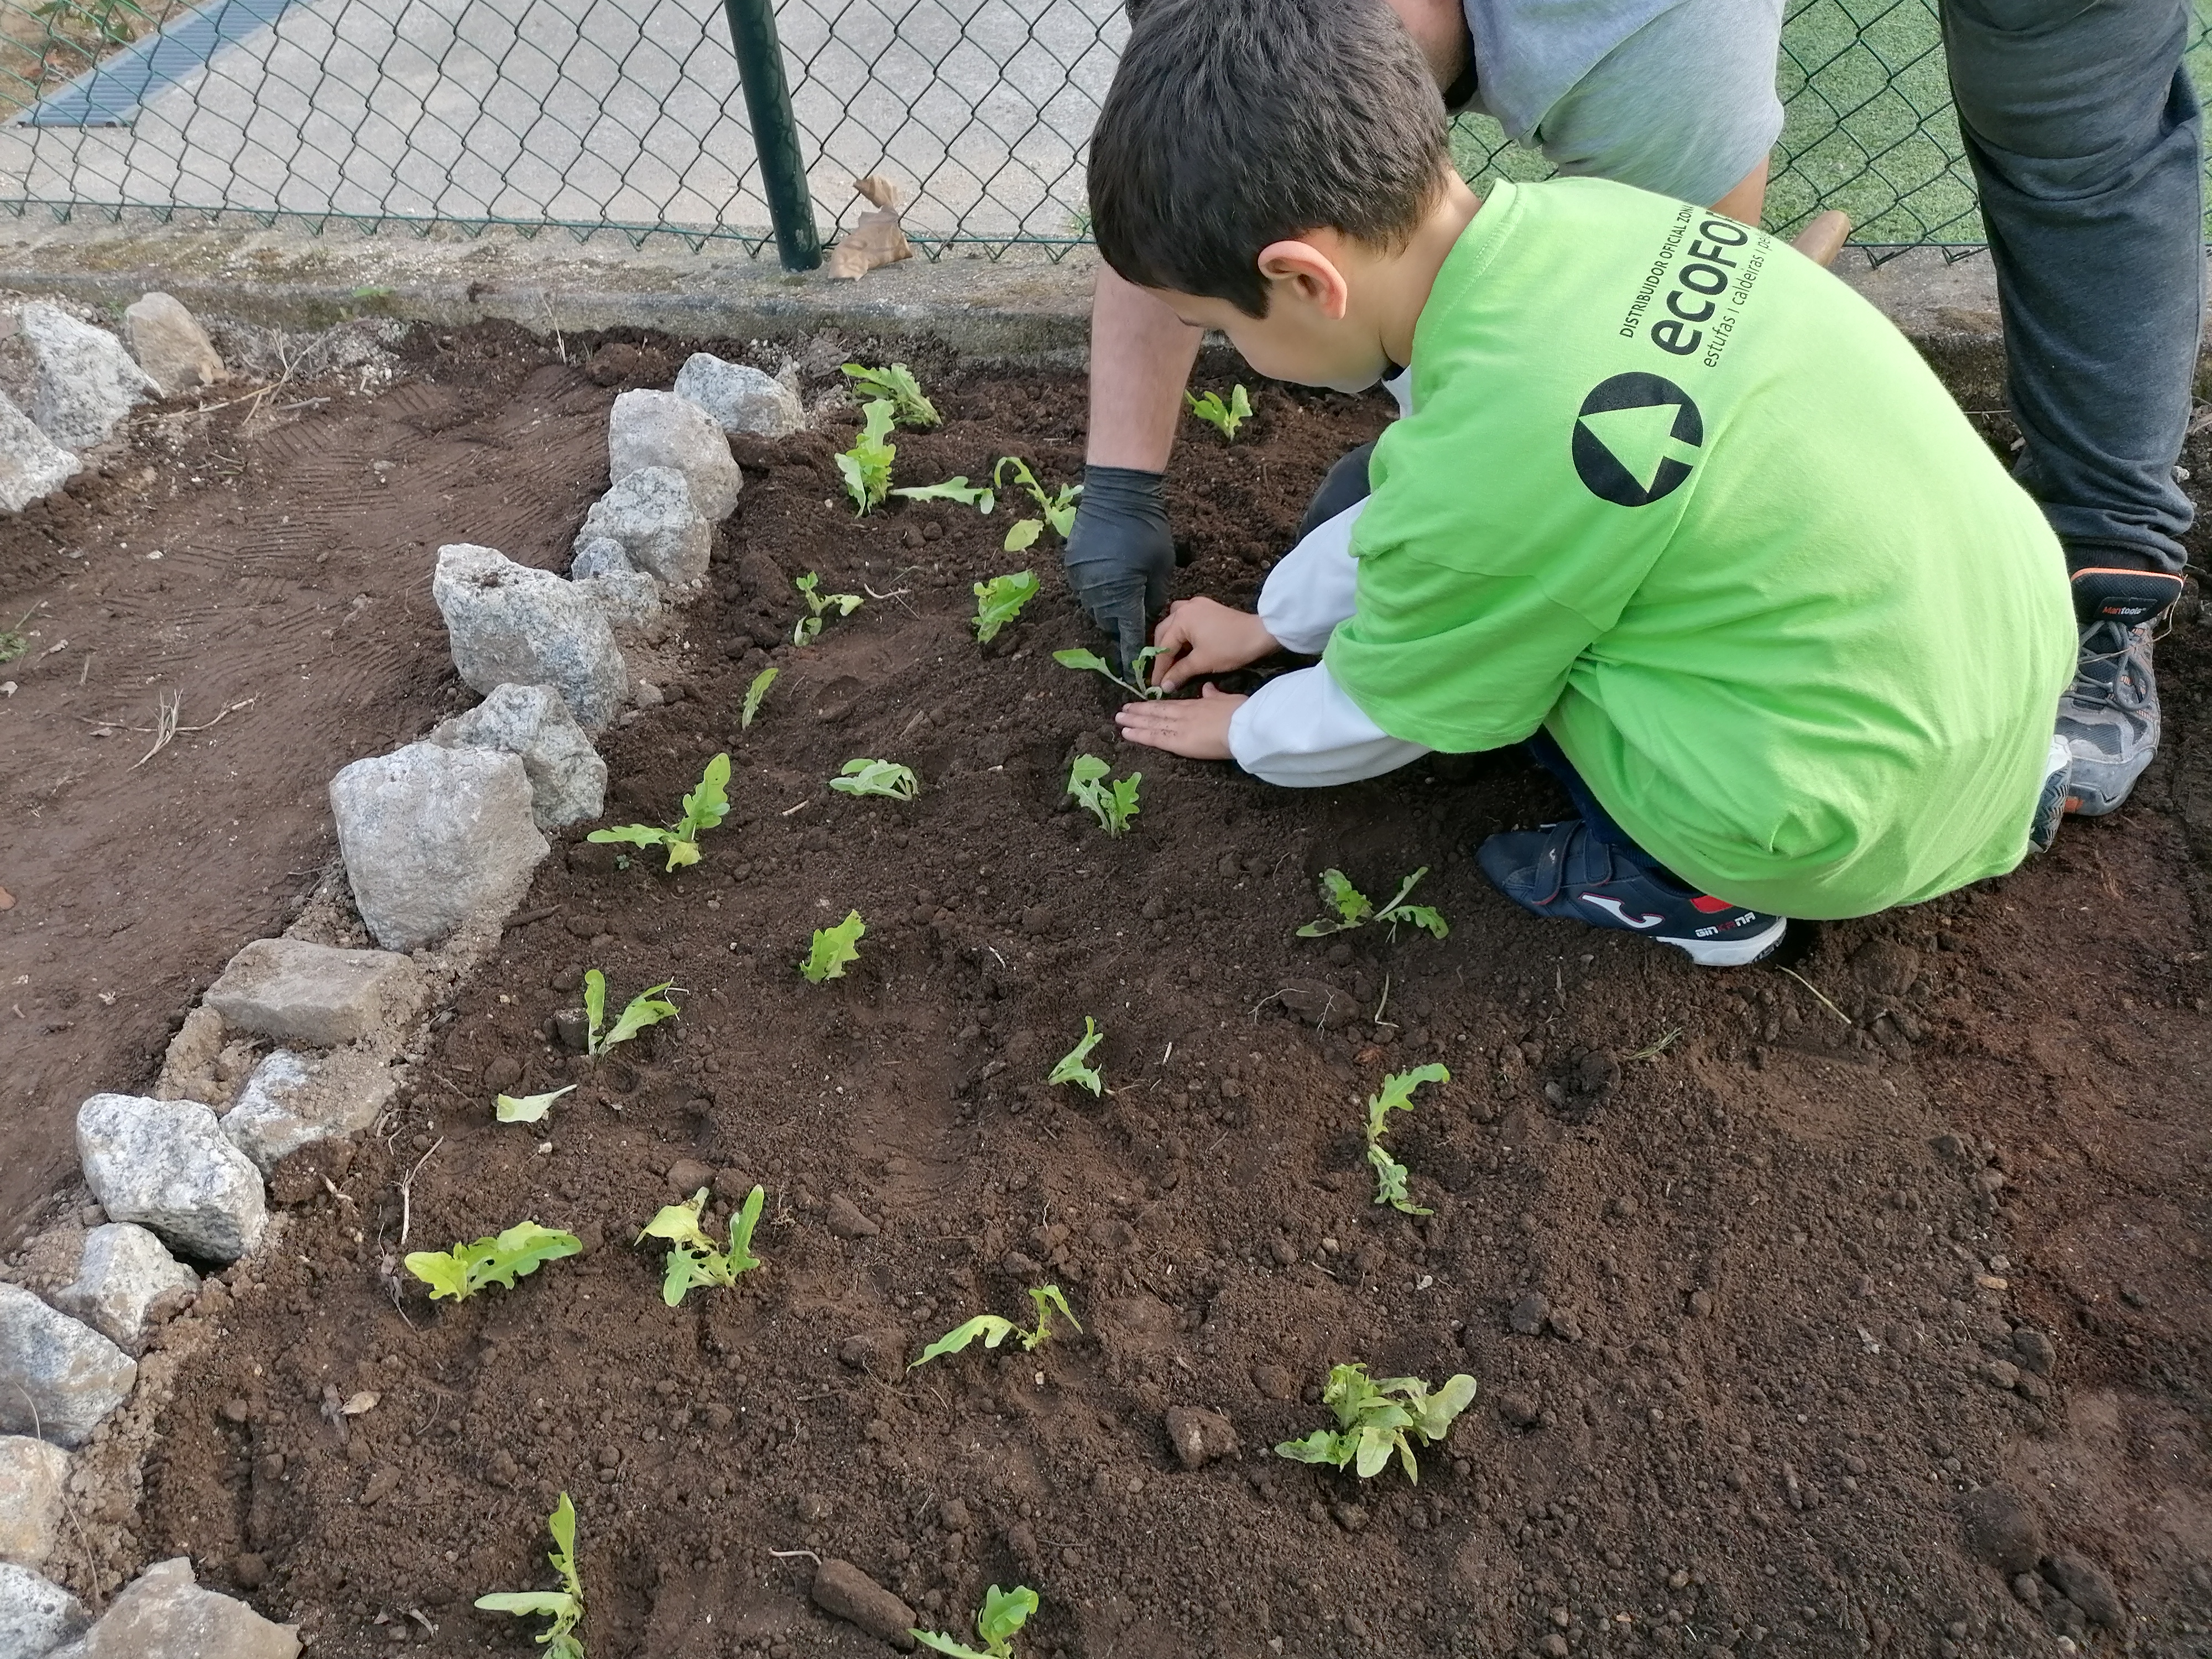 Plantação das alfaces com a colaboração de familiares.
Projeto "Escola sem Muros" - articulação com a comunidade educativa.